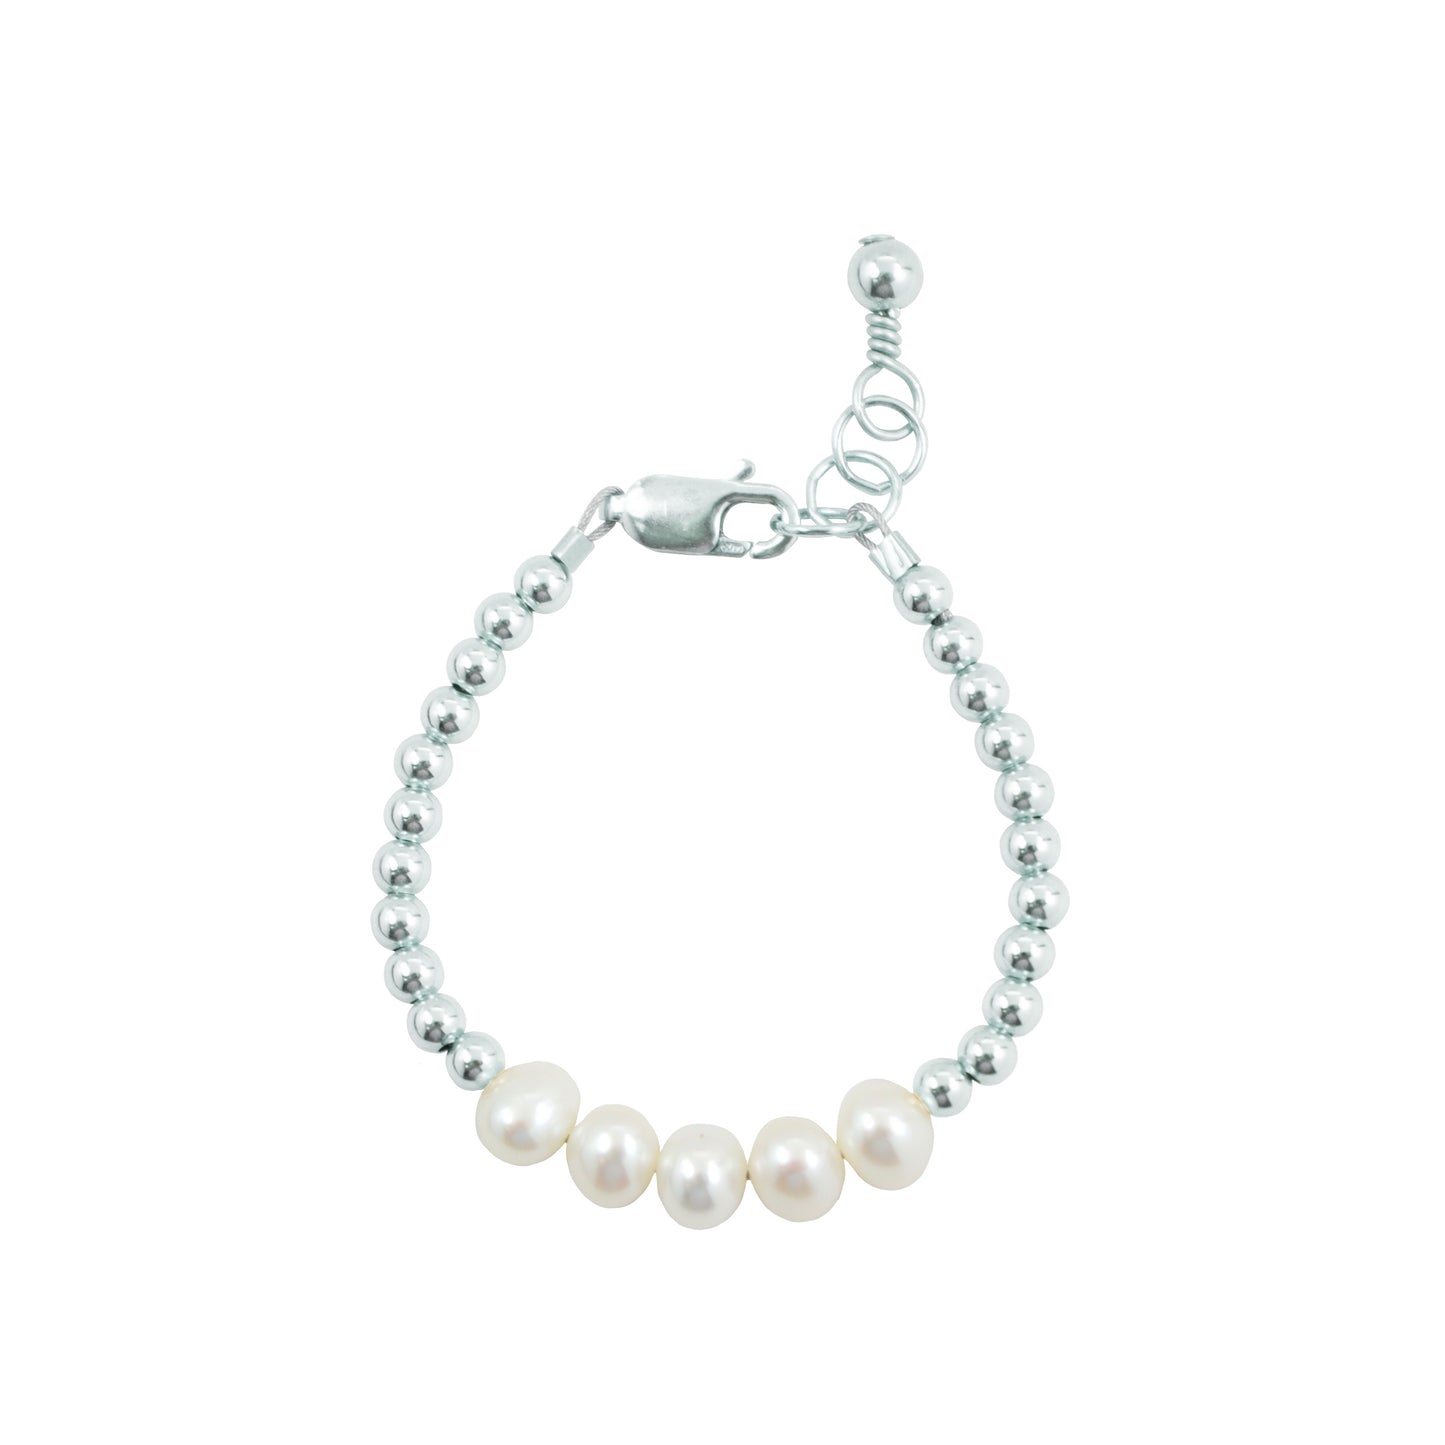 3mm Tiny Blessings Beads, Baby/Children's Beaded Bracelet for Girls - Sterling Silver